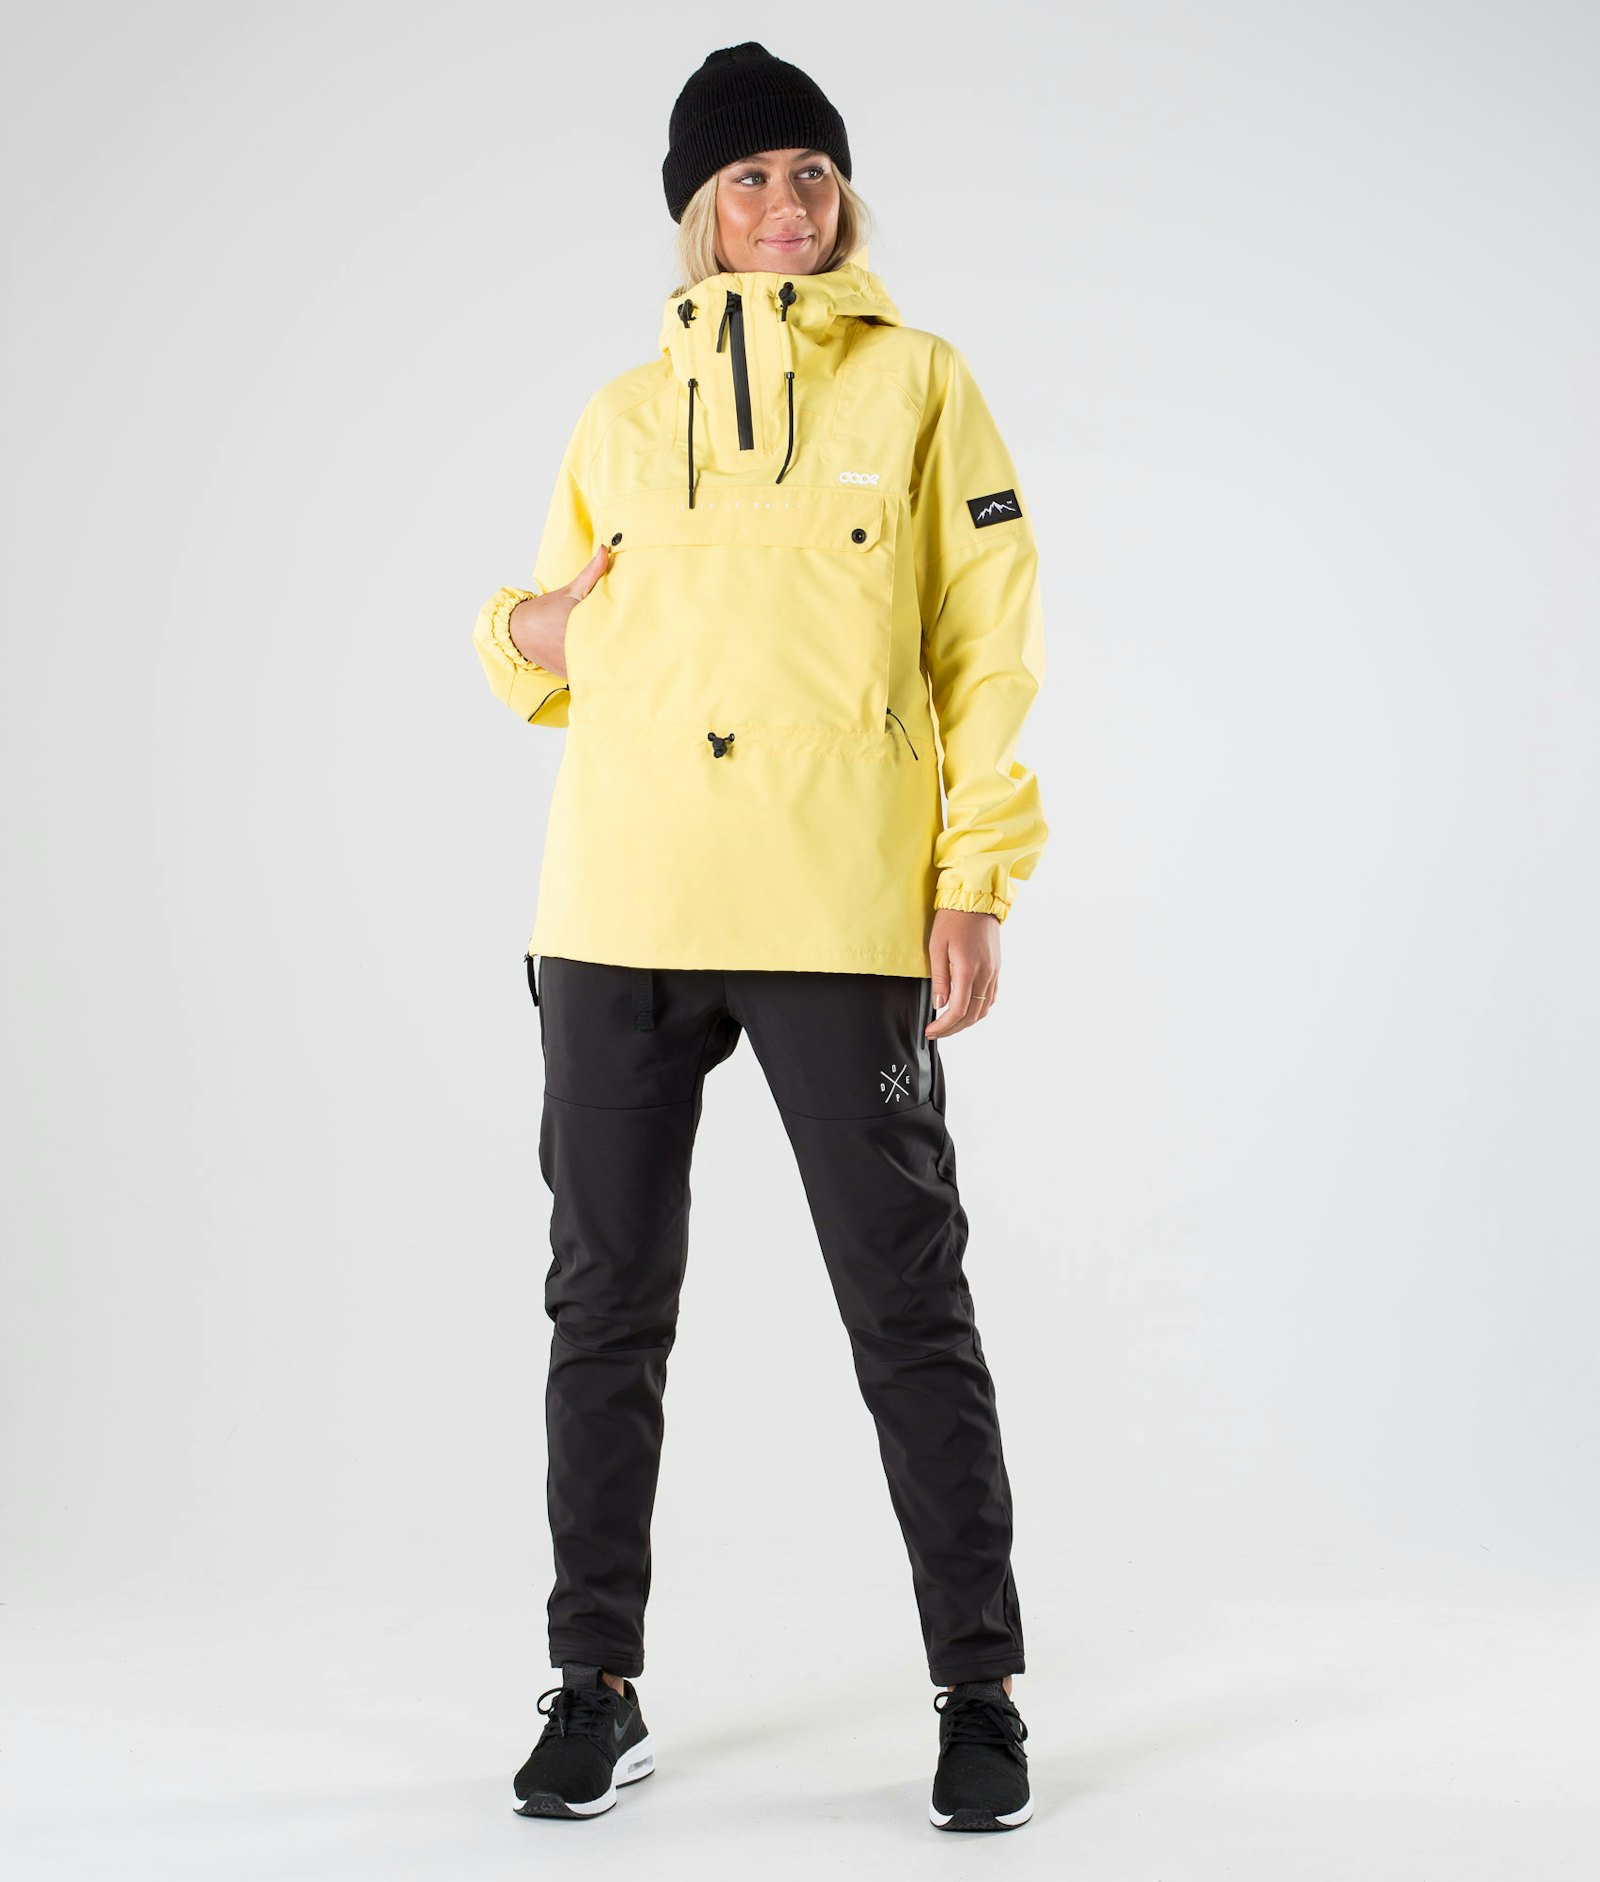 Hiker W 2020 Outdoor Jacket Women Yellow, Image 9 of 10